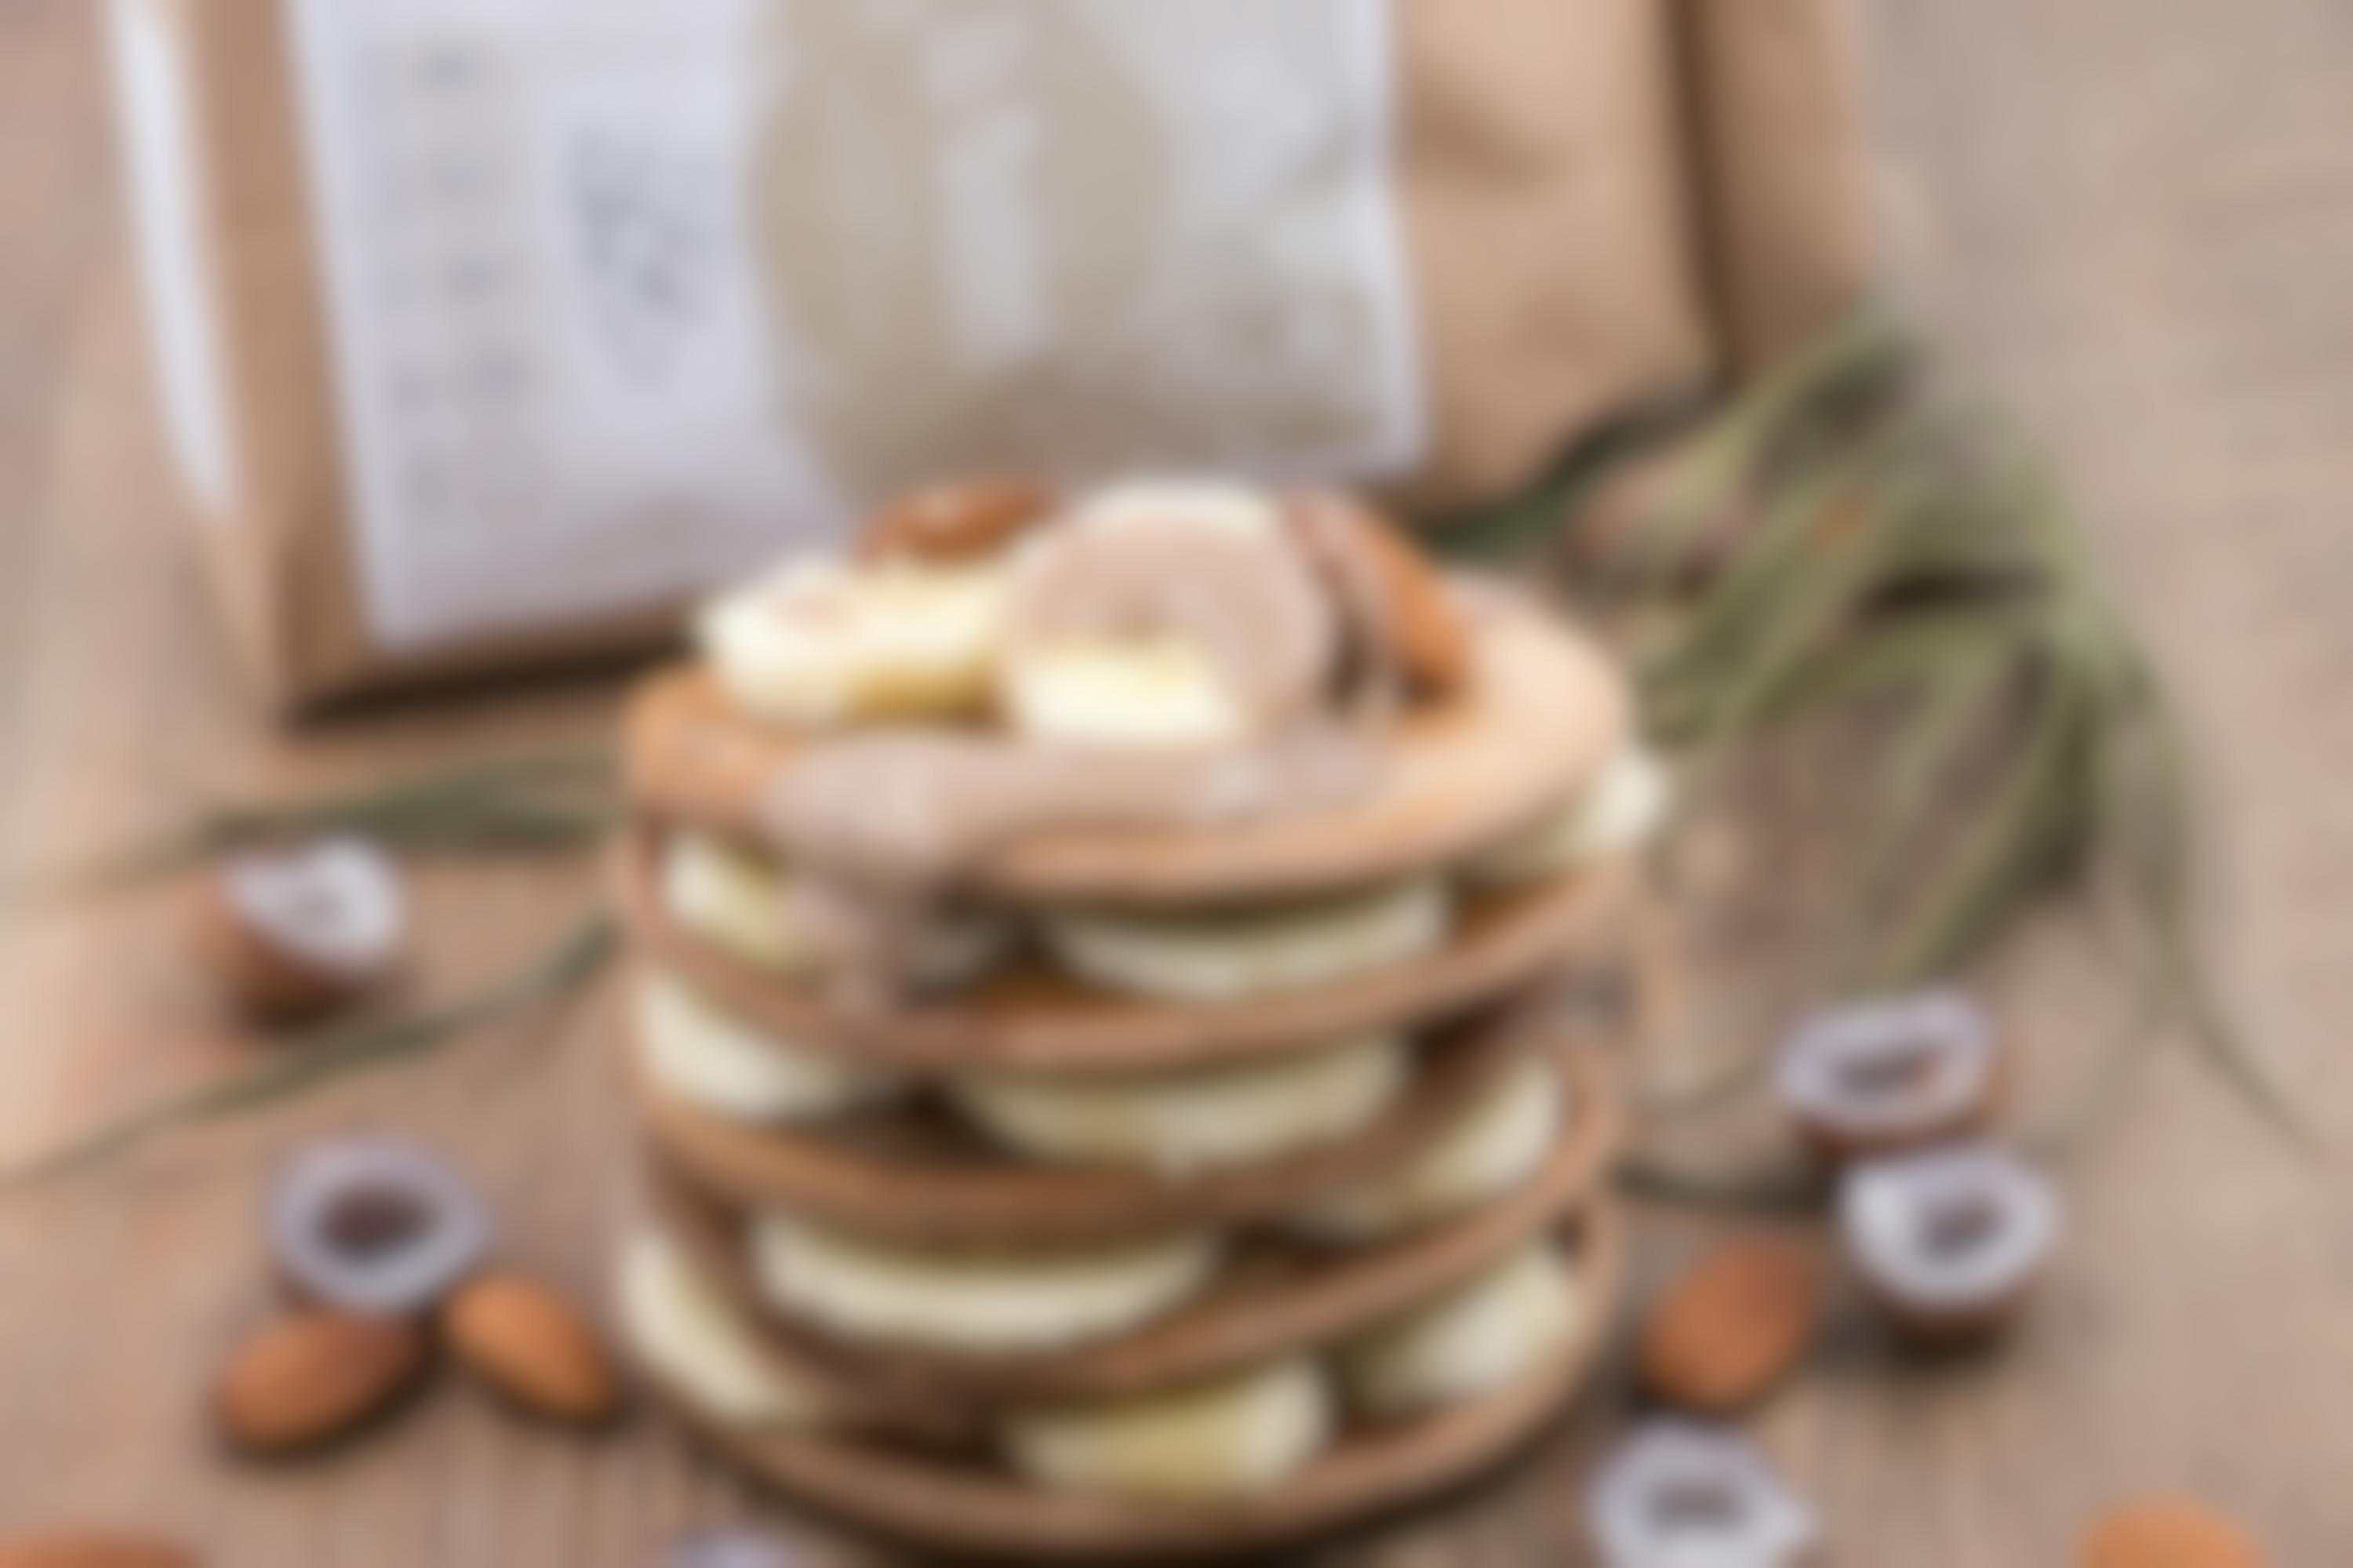 Vegan pancakes with almond flour and protein powder